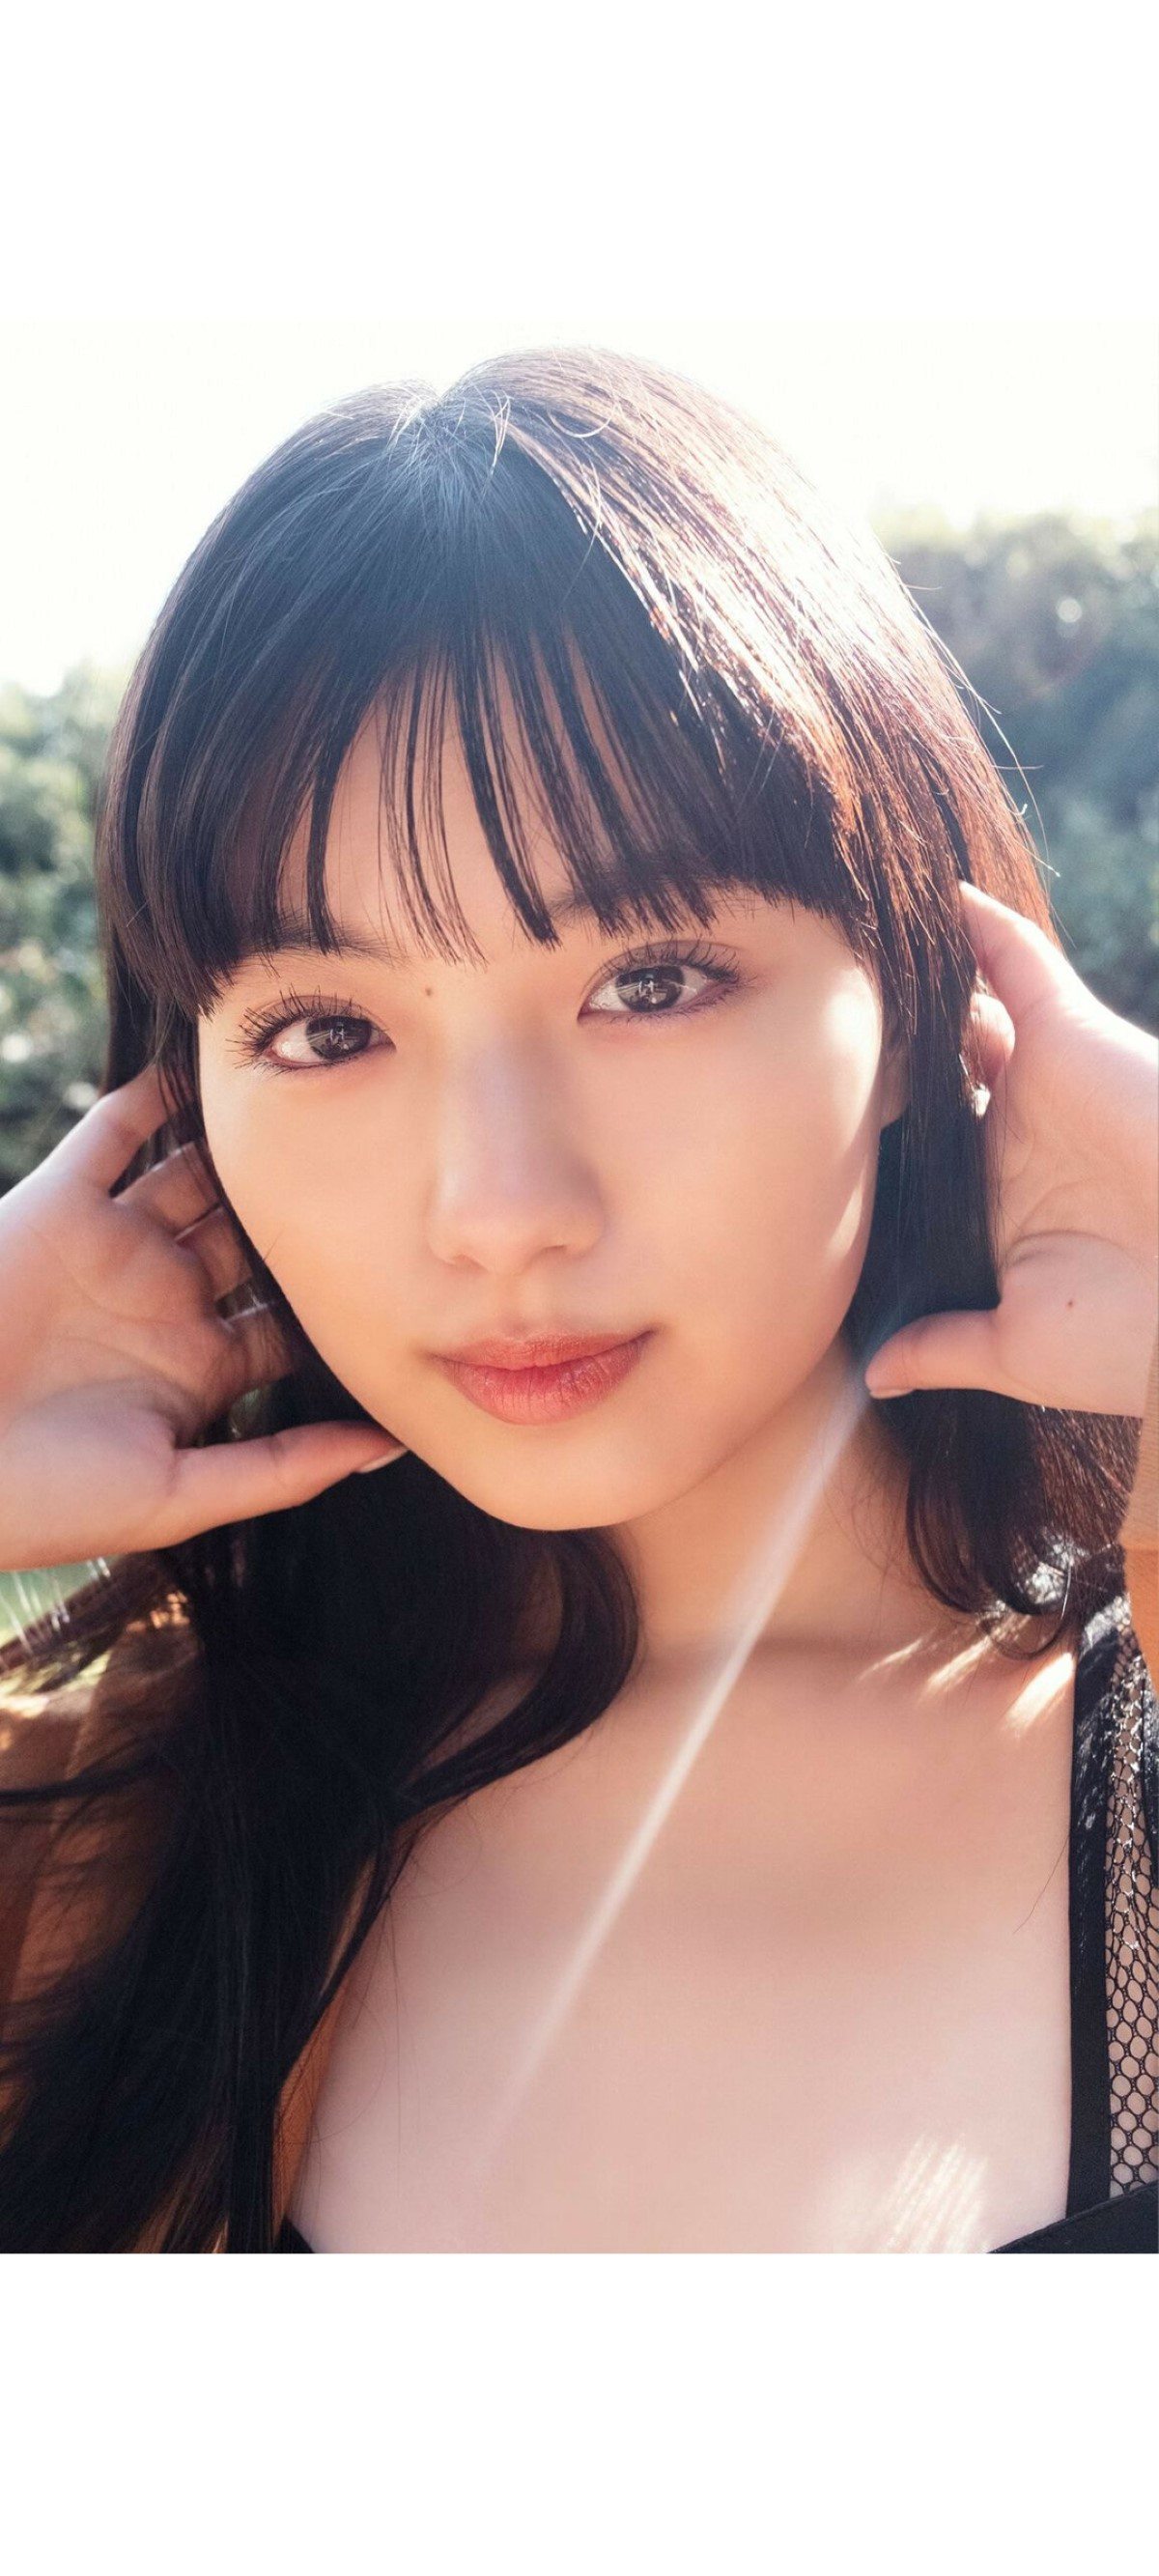 Weekly Photobook 2020 12 07 Noa Tsurushima 鶴嶋乃愛 A natural actress 生まれながらにして女優 0013 4946180604.jpg